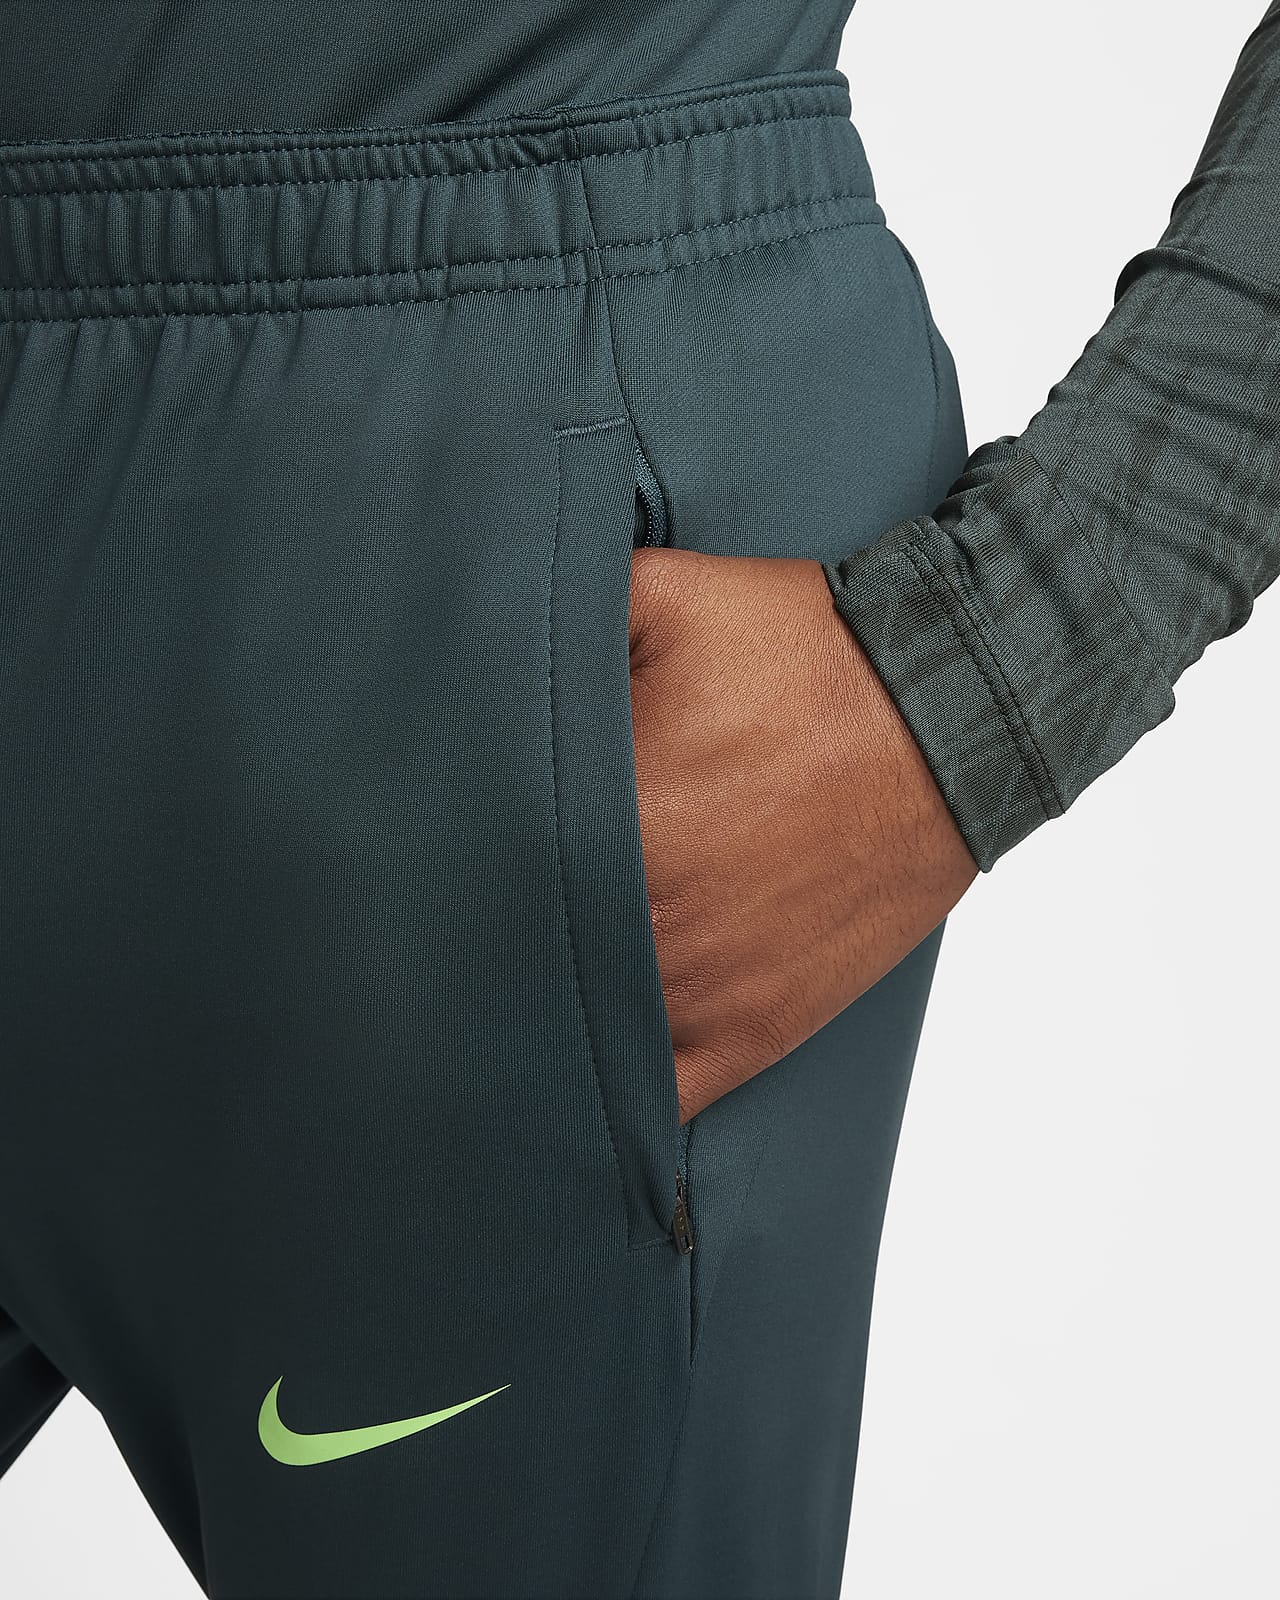 Pantalon de foot Dri-FIT Nike Strike pour homme. Nike FR